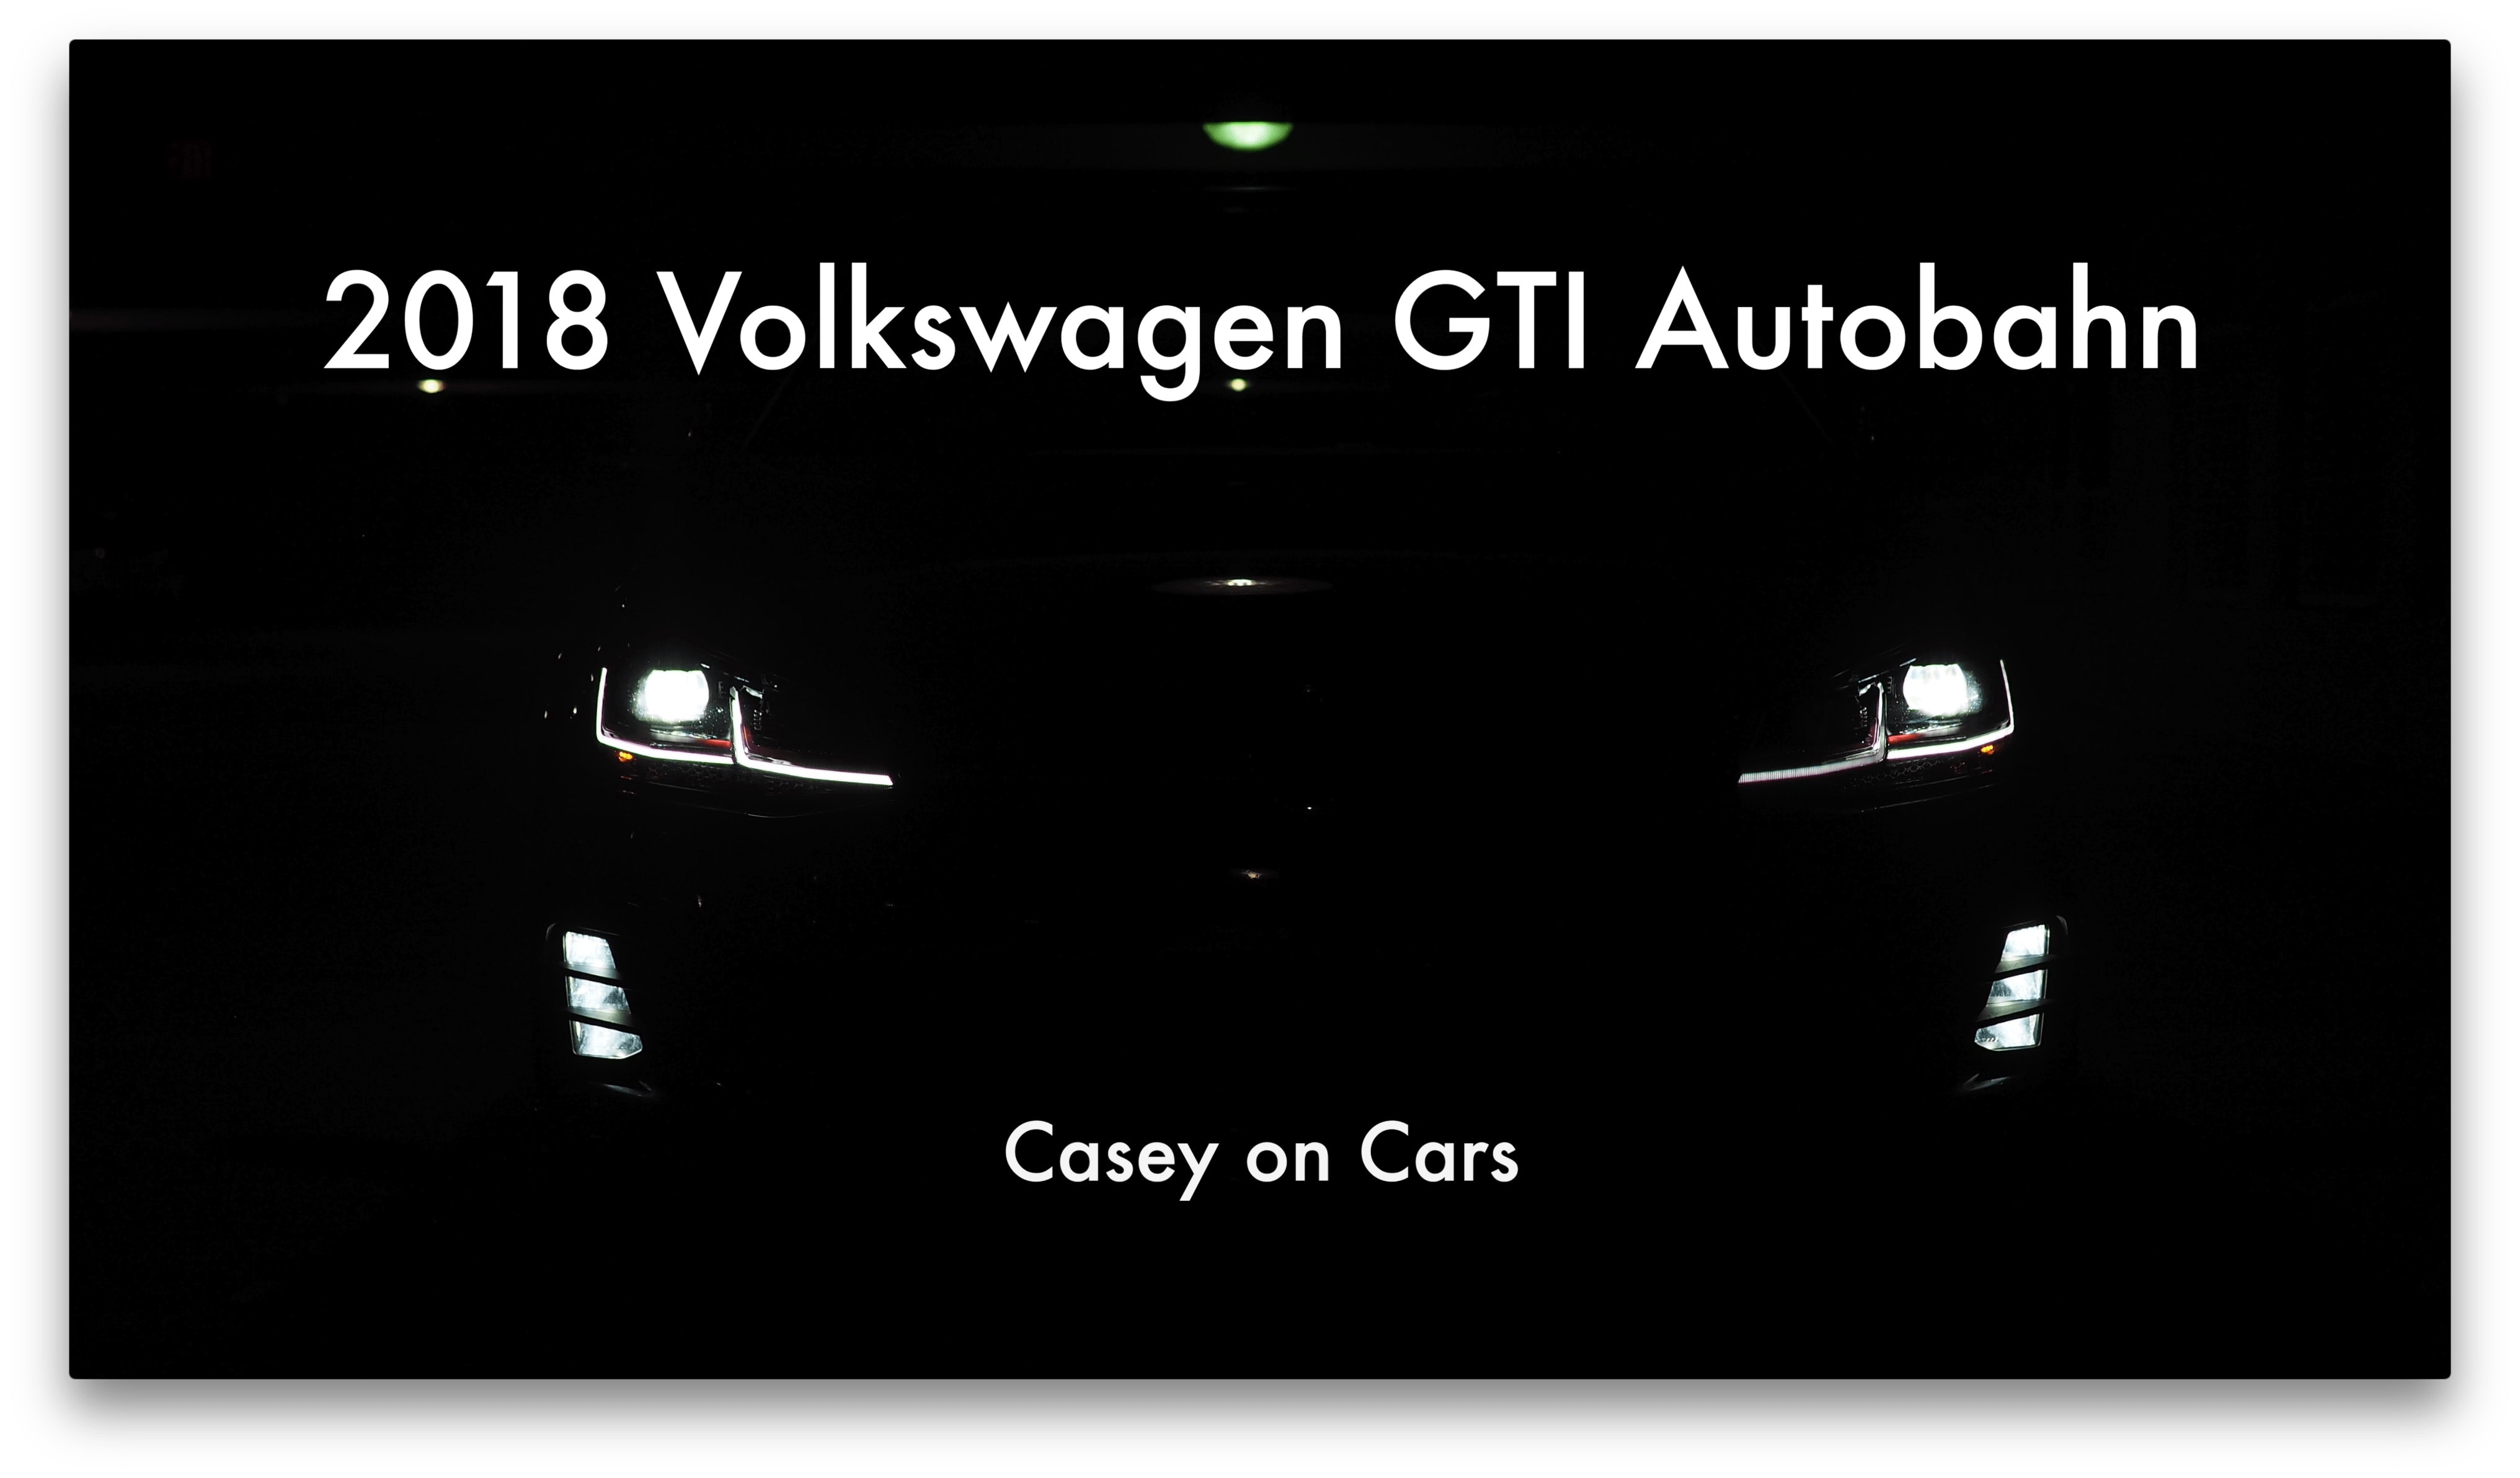 Volkswagen GTI in the dark